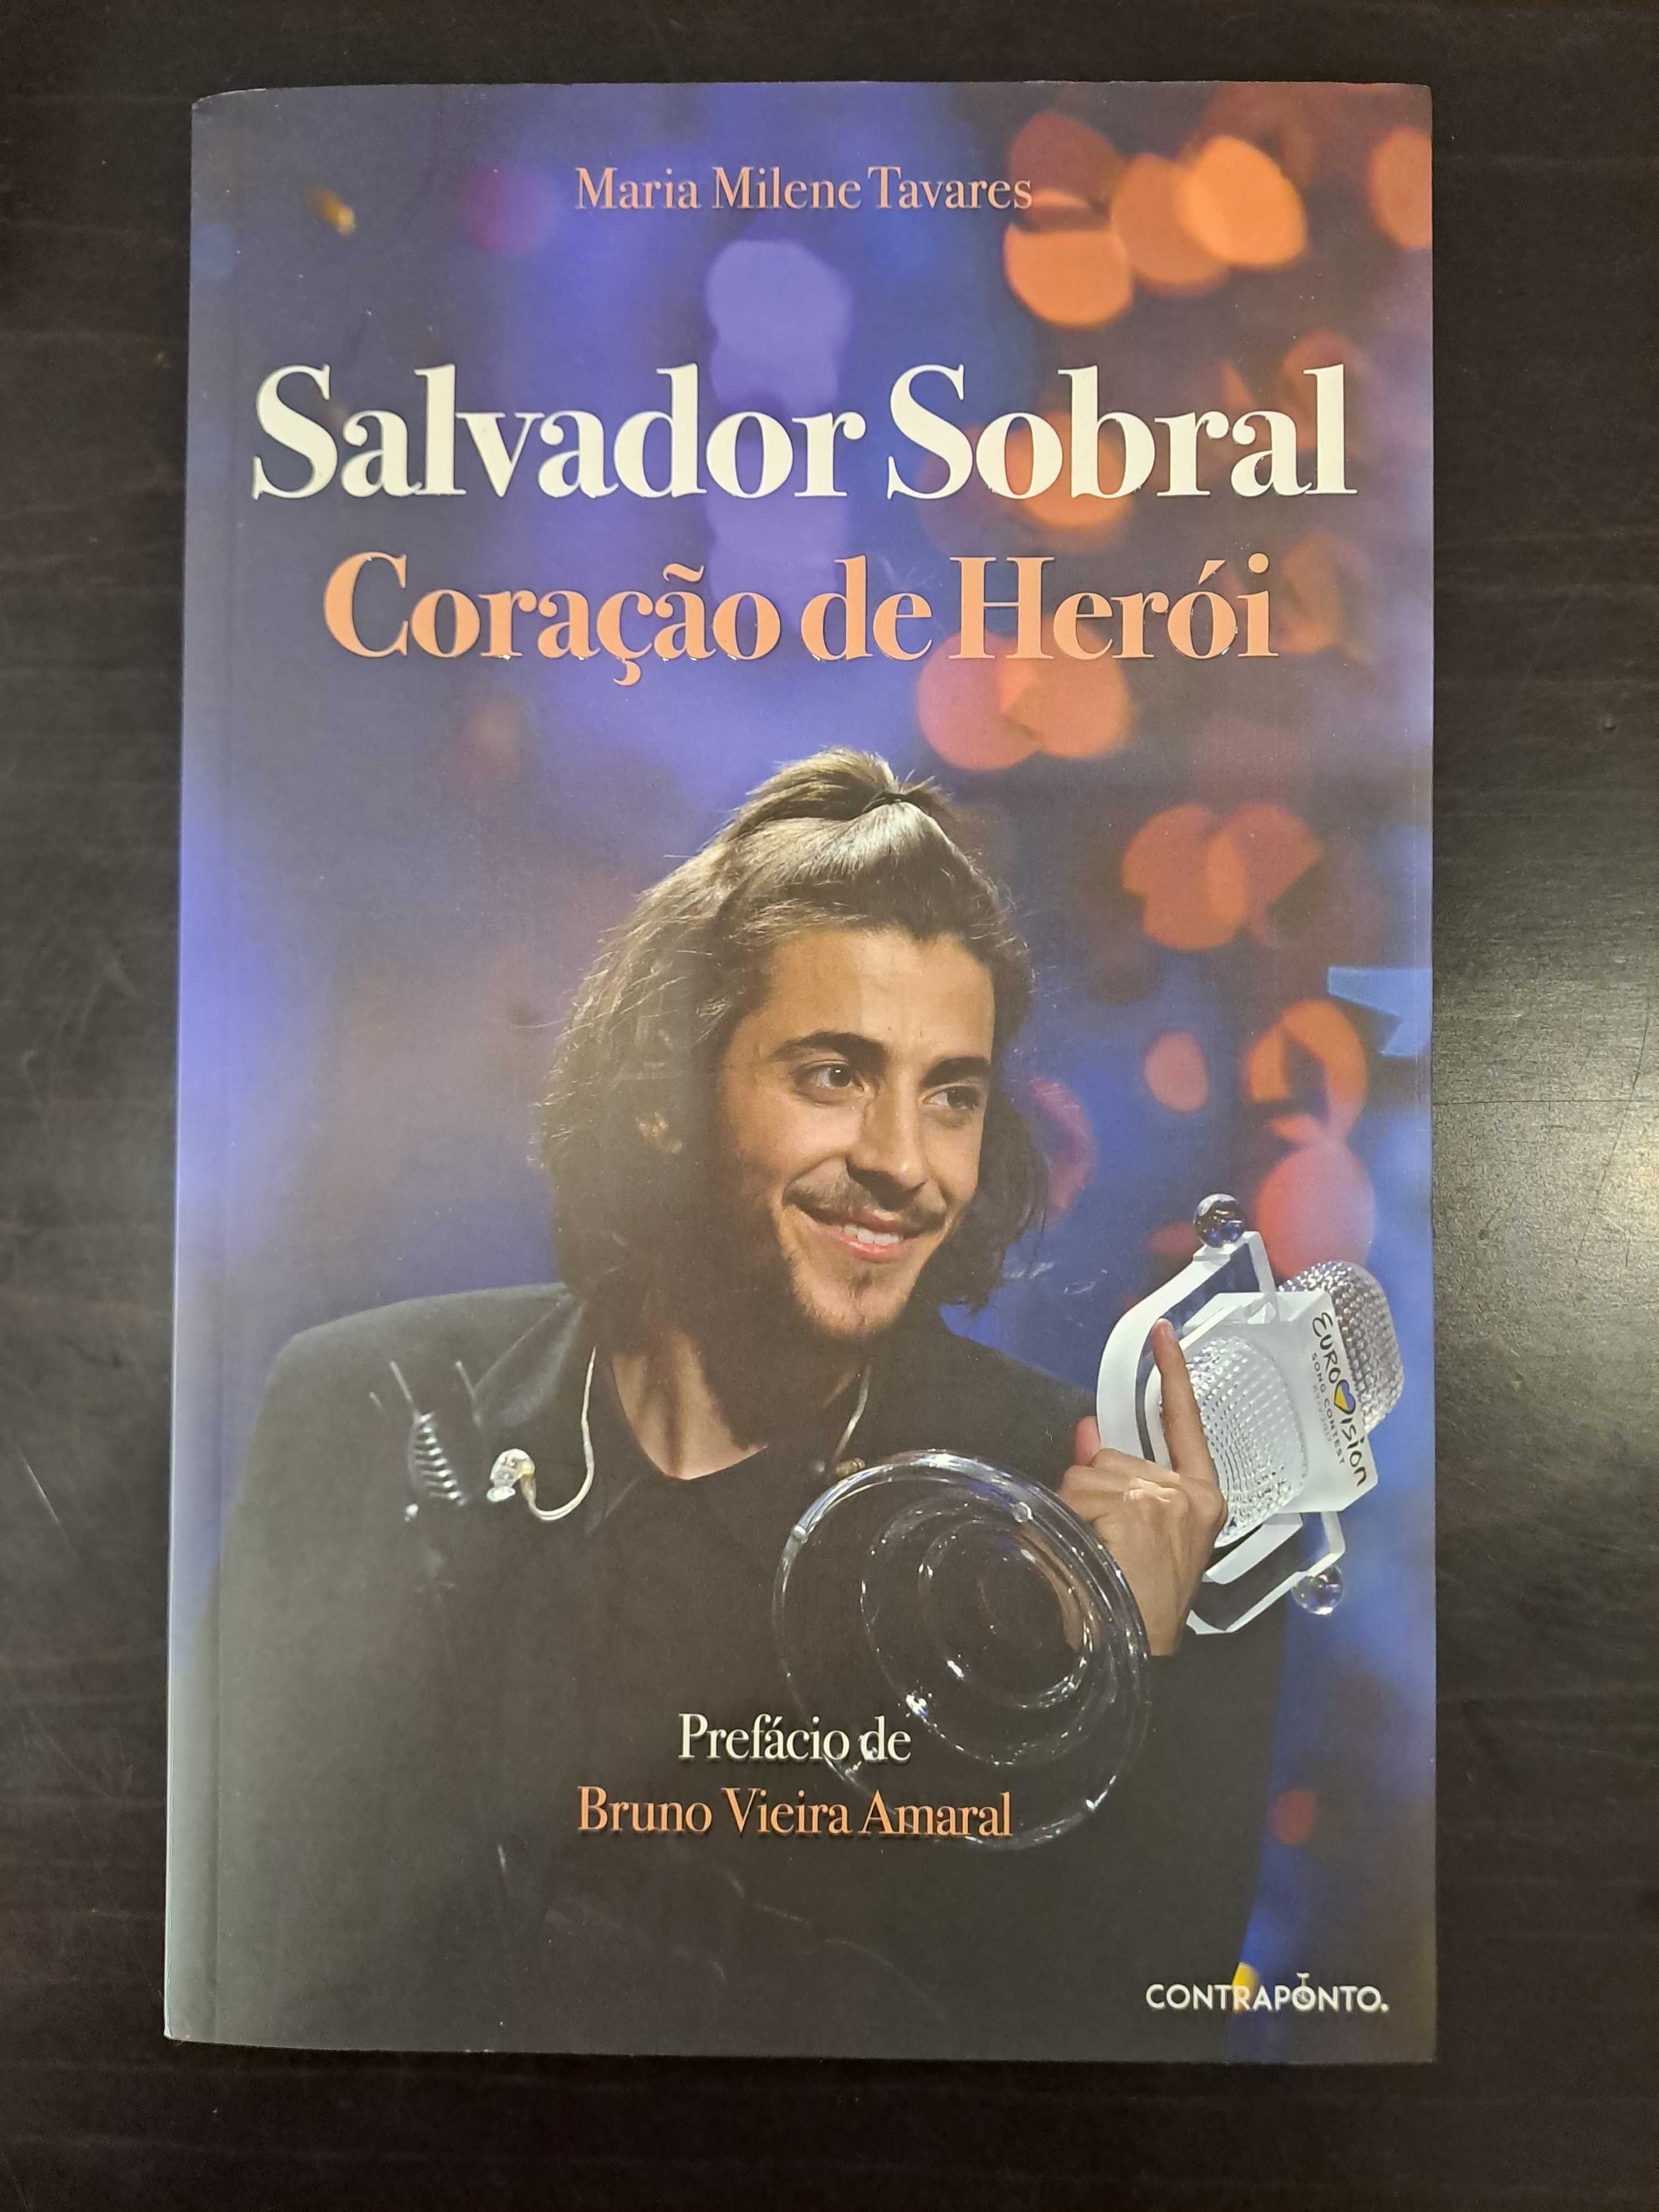 Livro novo " Salvador Sobral"